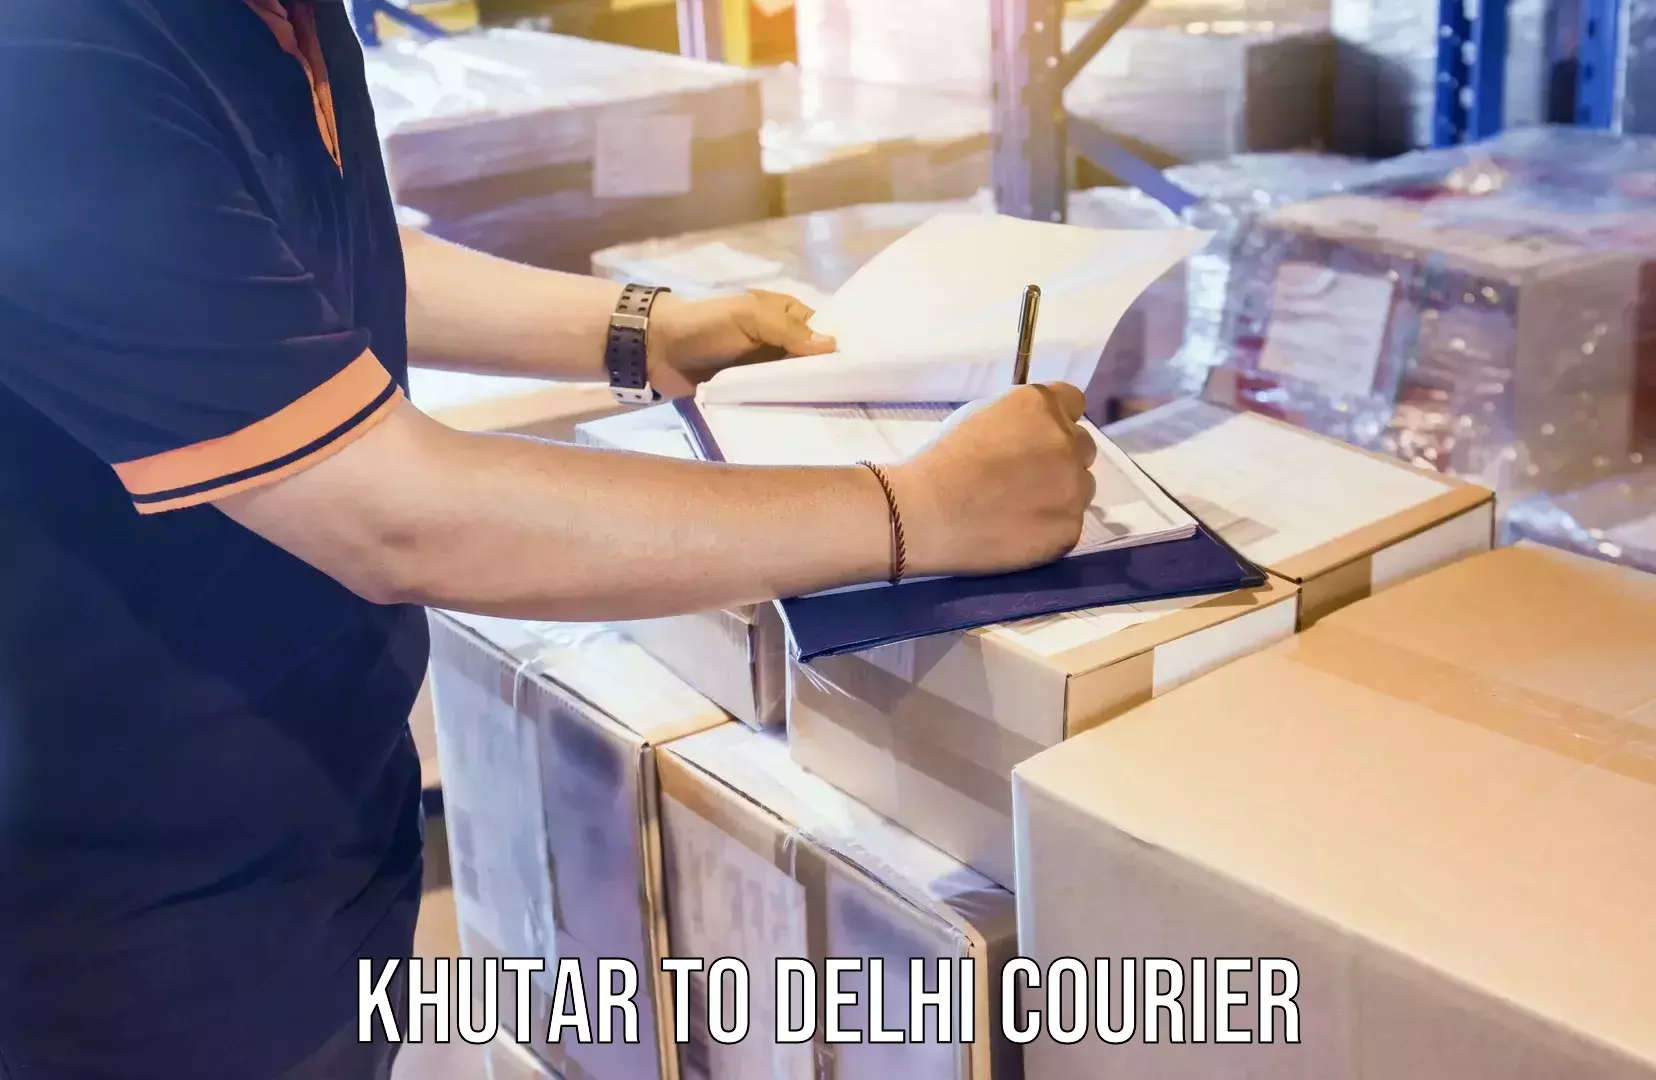 Furniture transport experts Khutar to Delhi